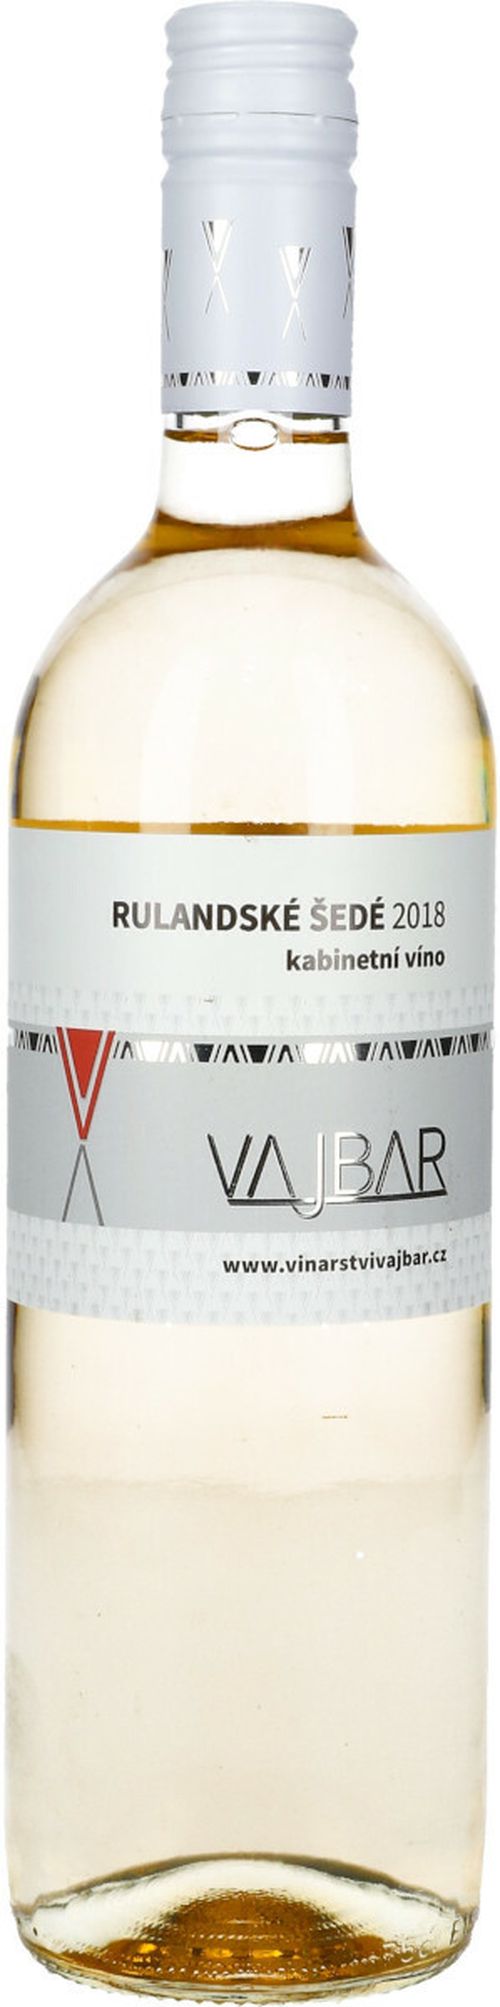 Vajbar Rulandské šedé jakostní víno kabinetní 2018 suché 0,75 l